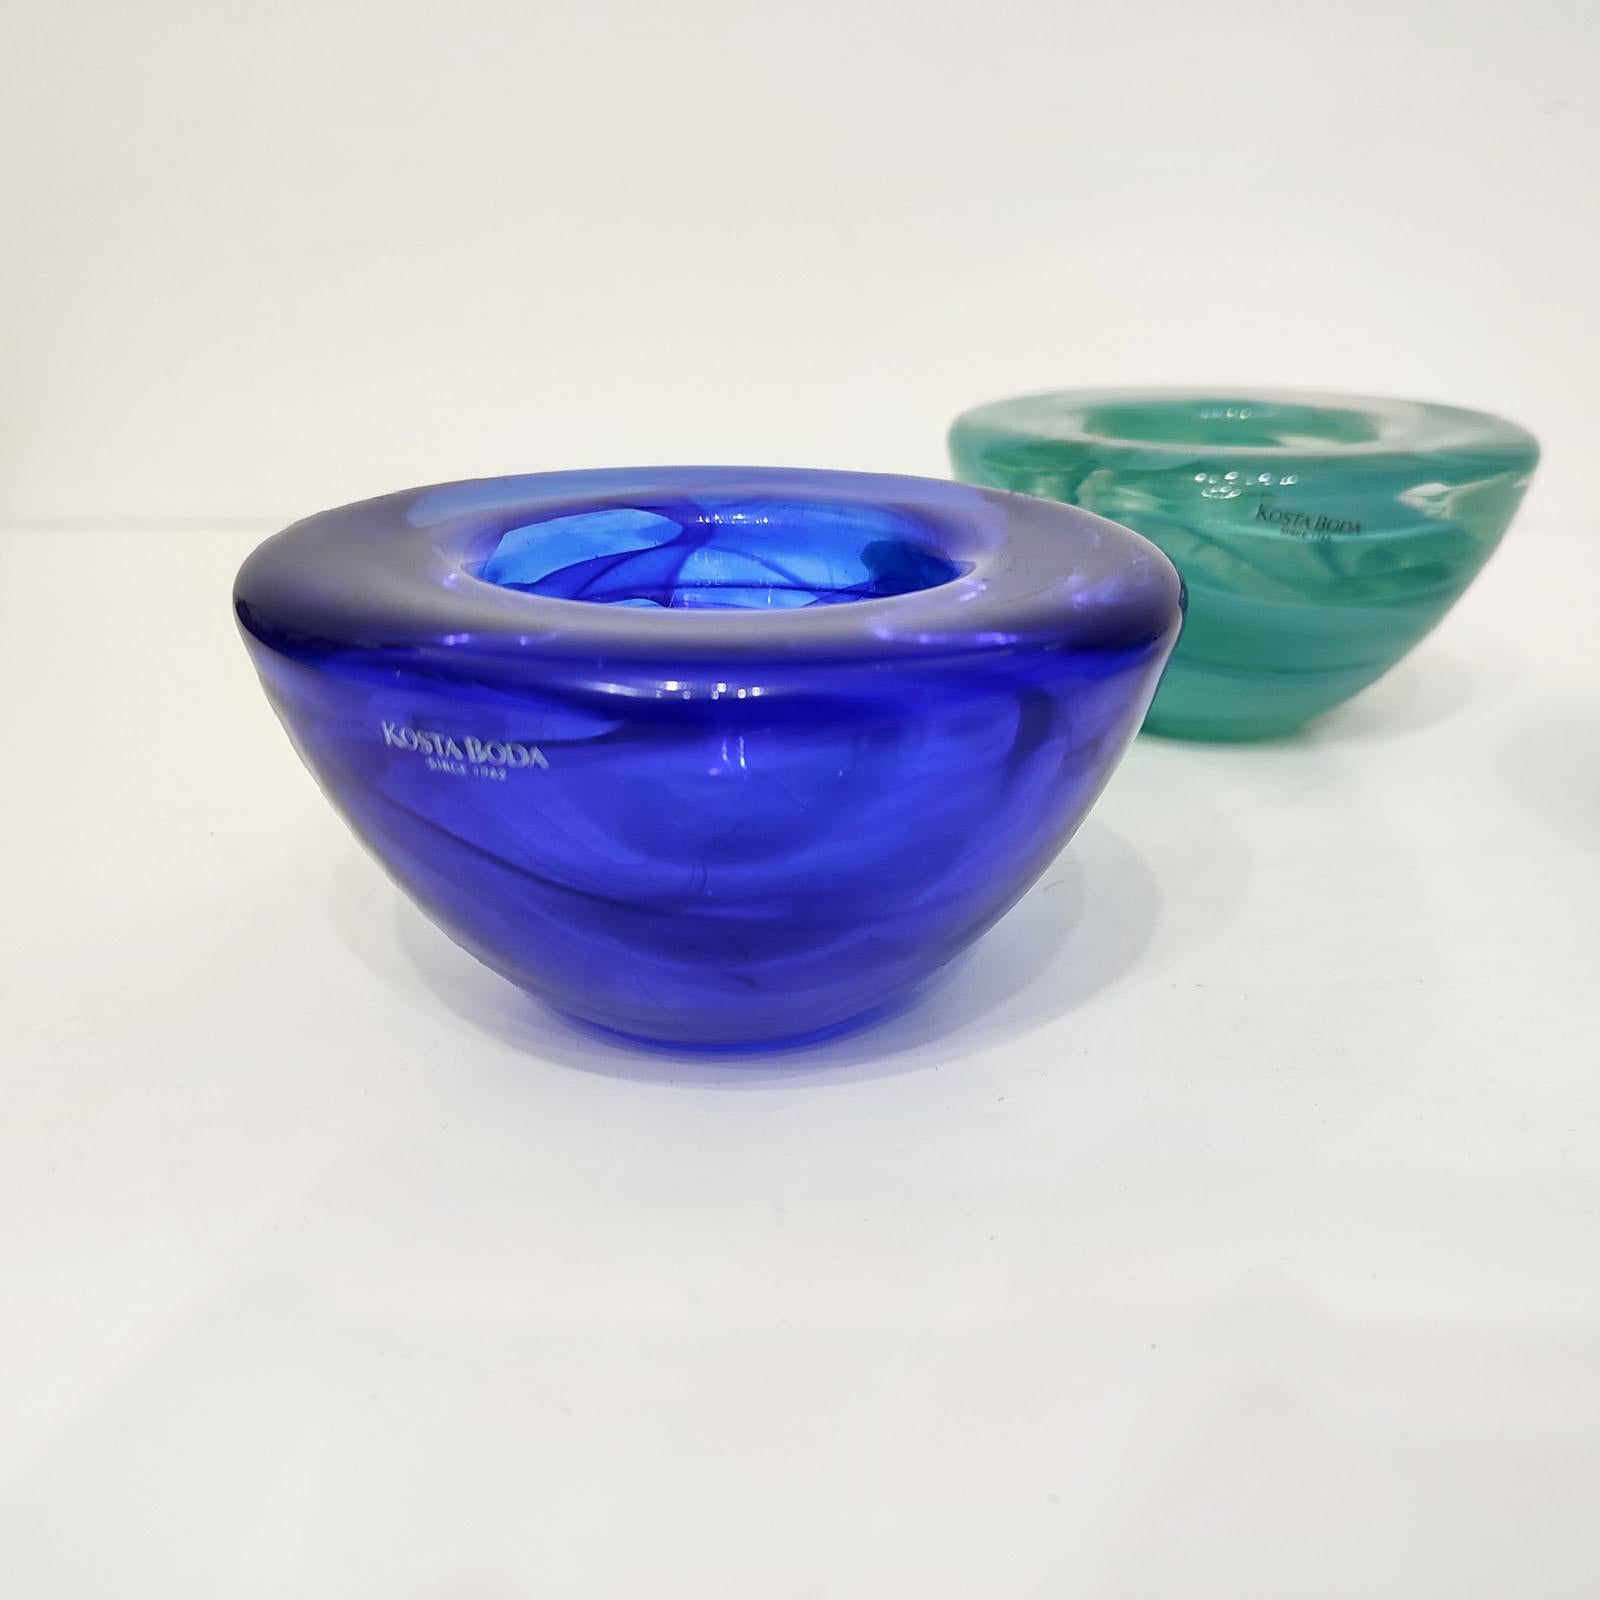 Glass Kosta Boda Set of 3 Bowl Votives by Anna Ehrner FREE SHIPPING